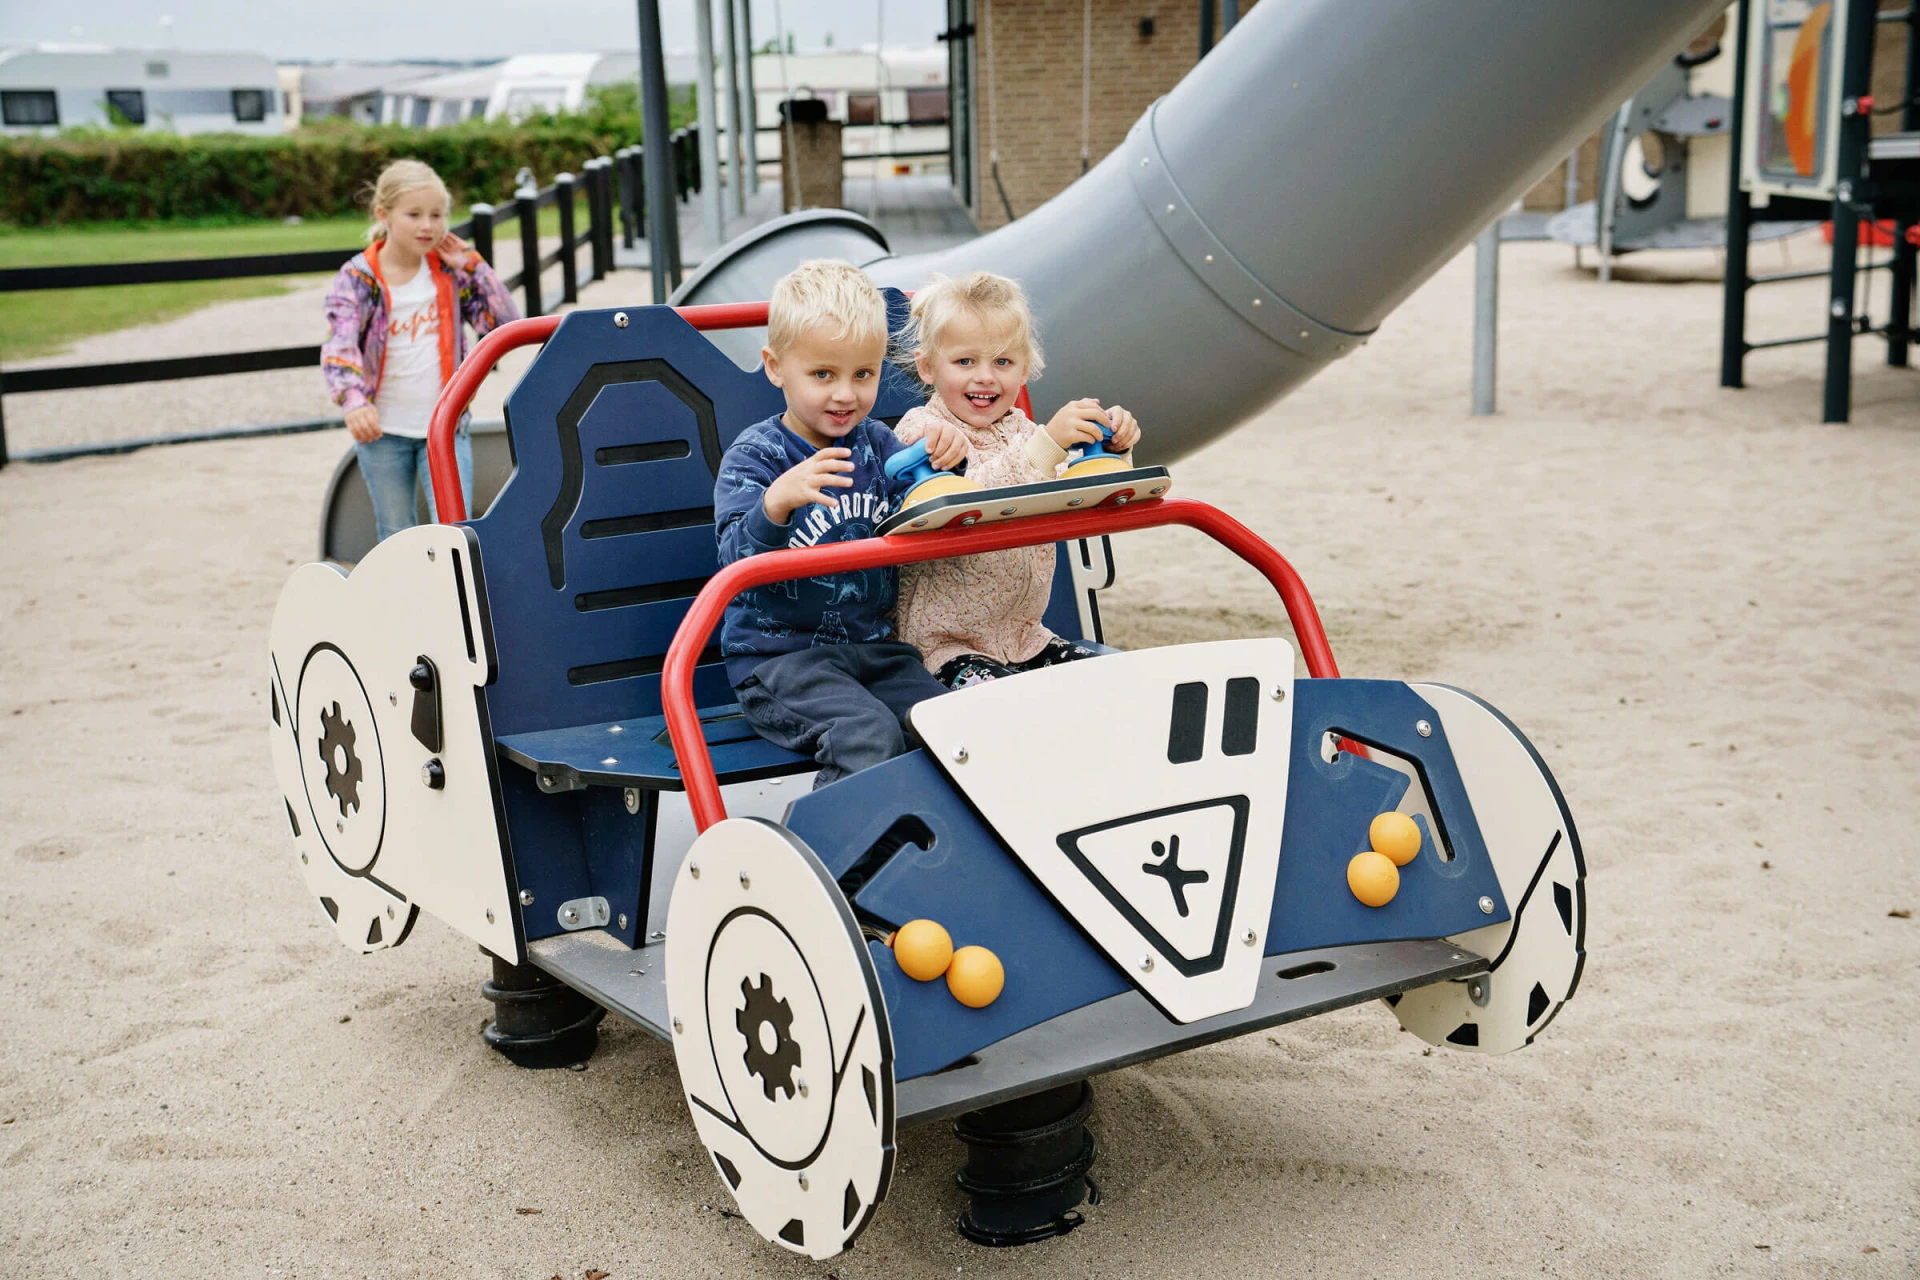 lapset leikkivät autoaiheisella leikkipuistovälineellä